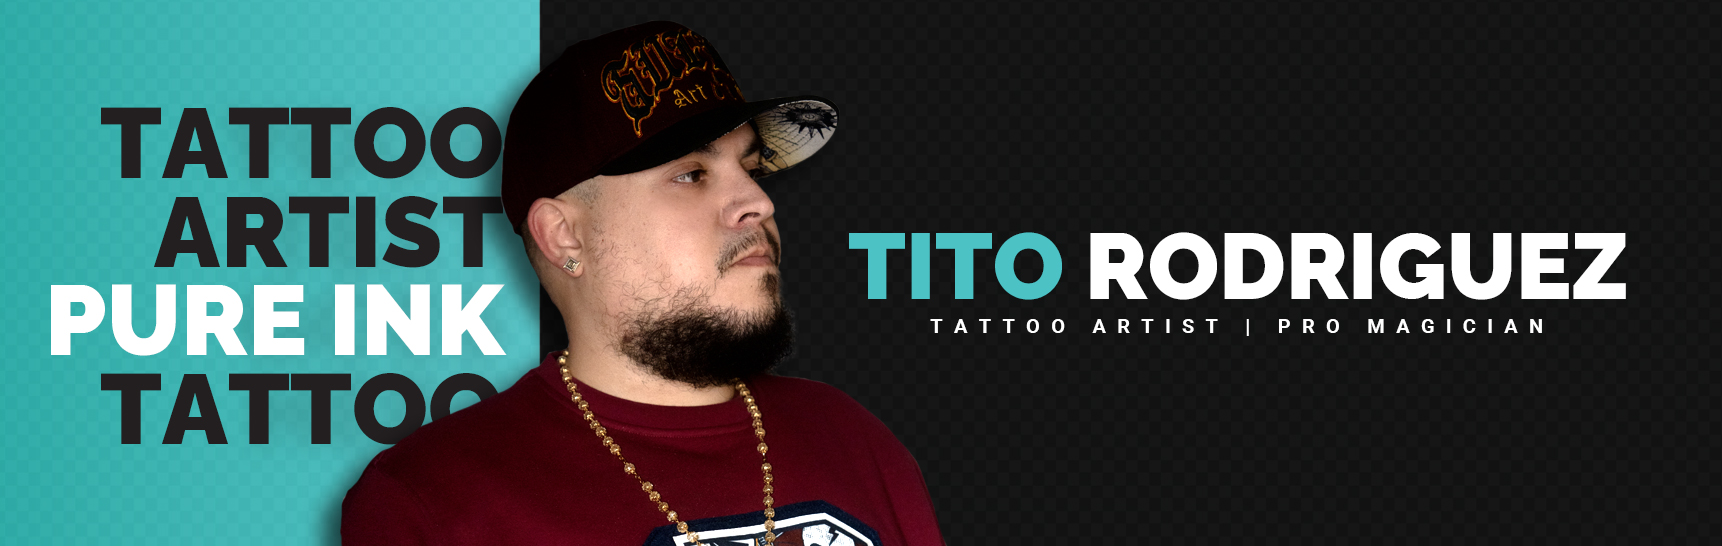 Tito Rodriguez - Tattoo Artist - Magician - Pure Ink Tattoo Studio NJ